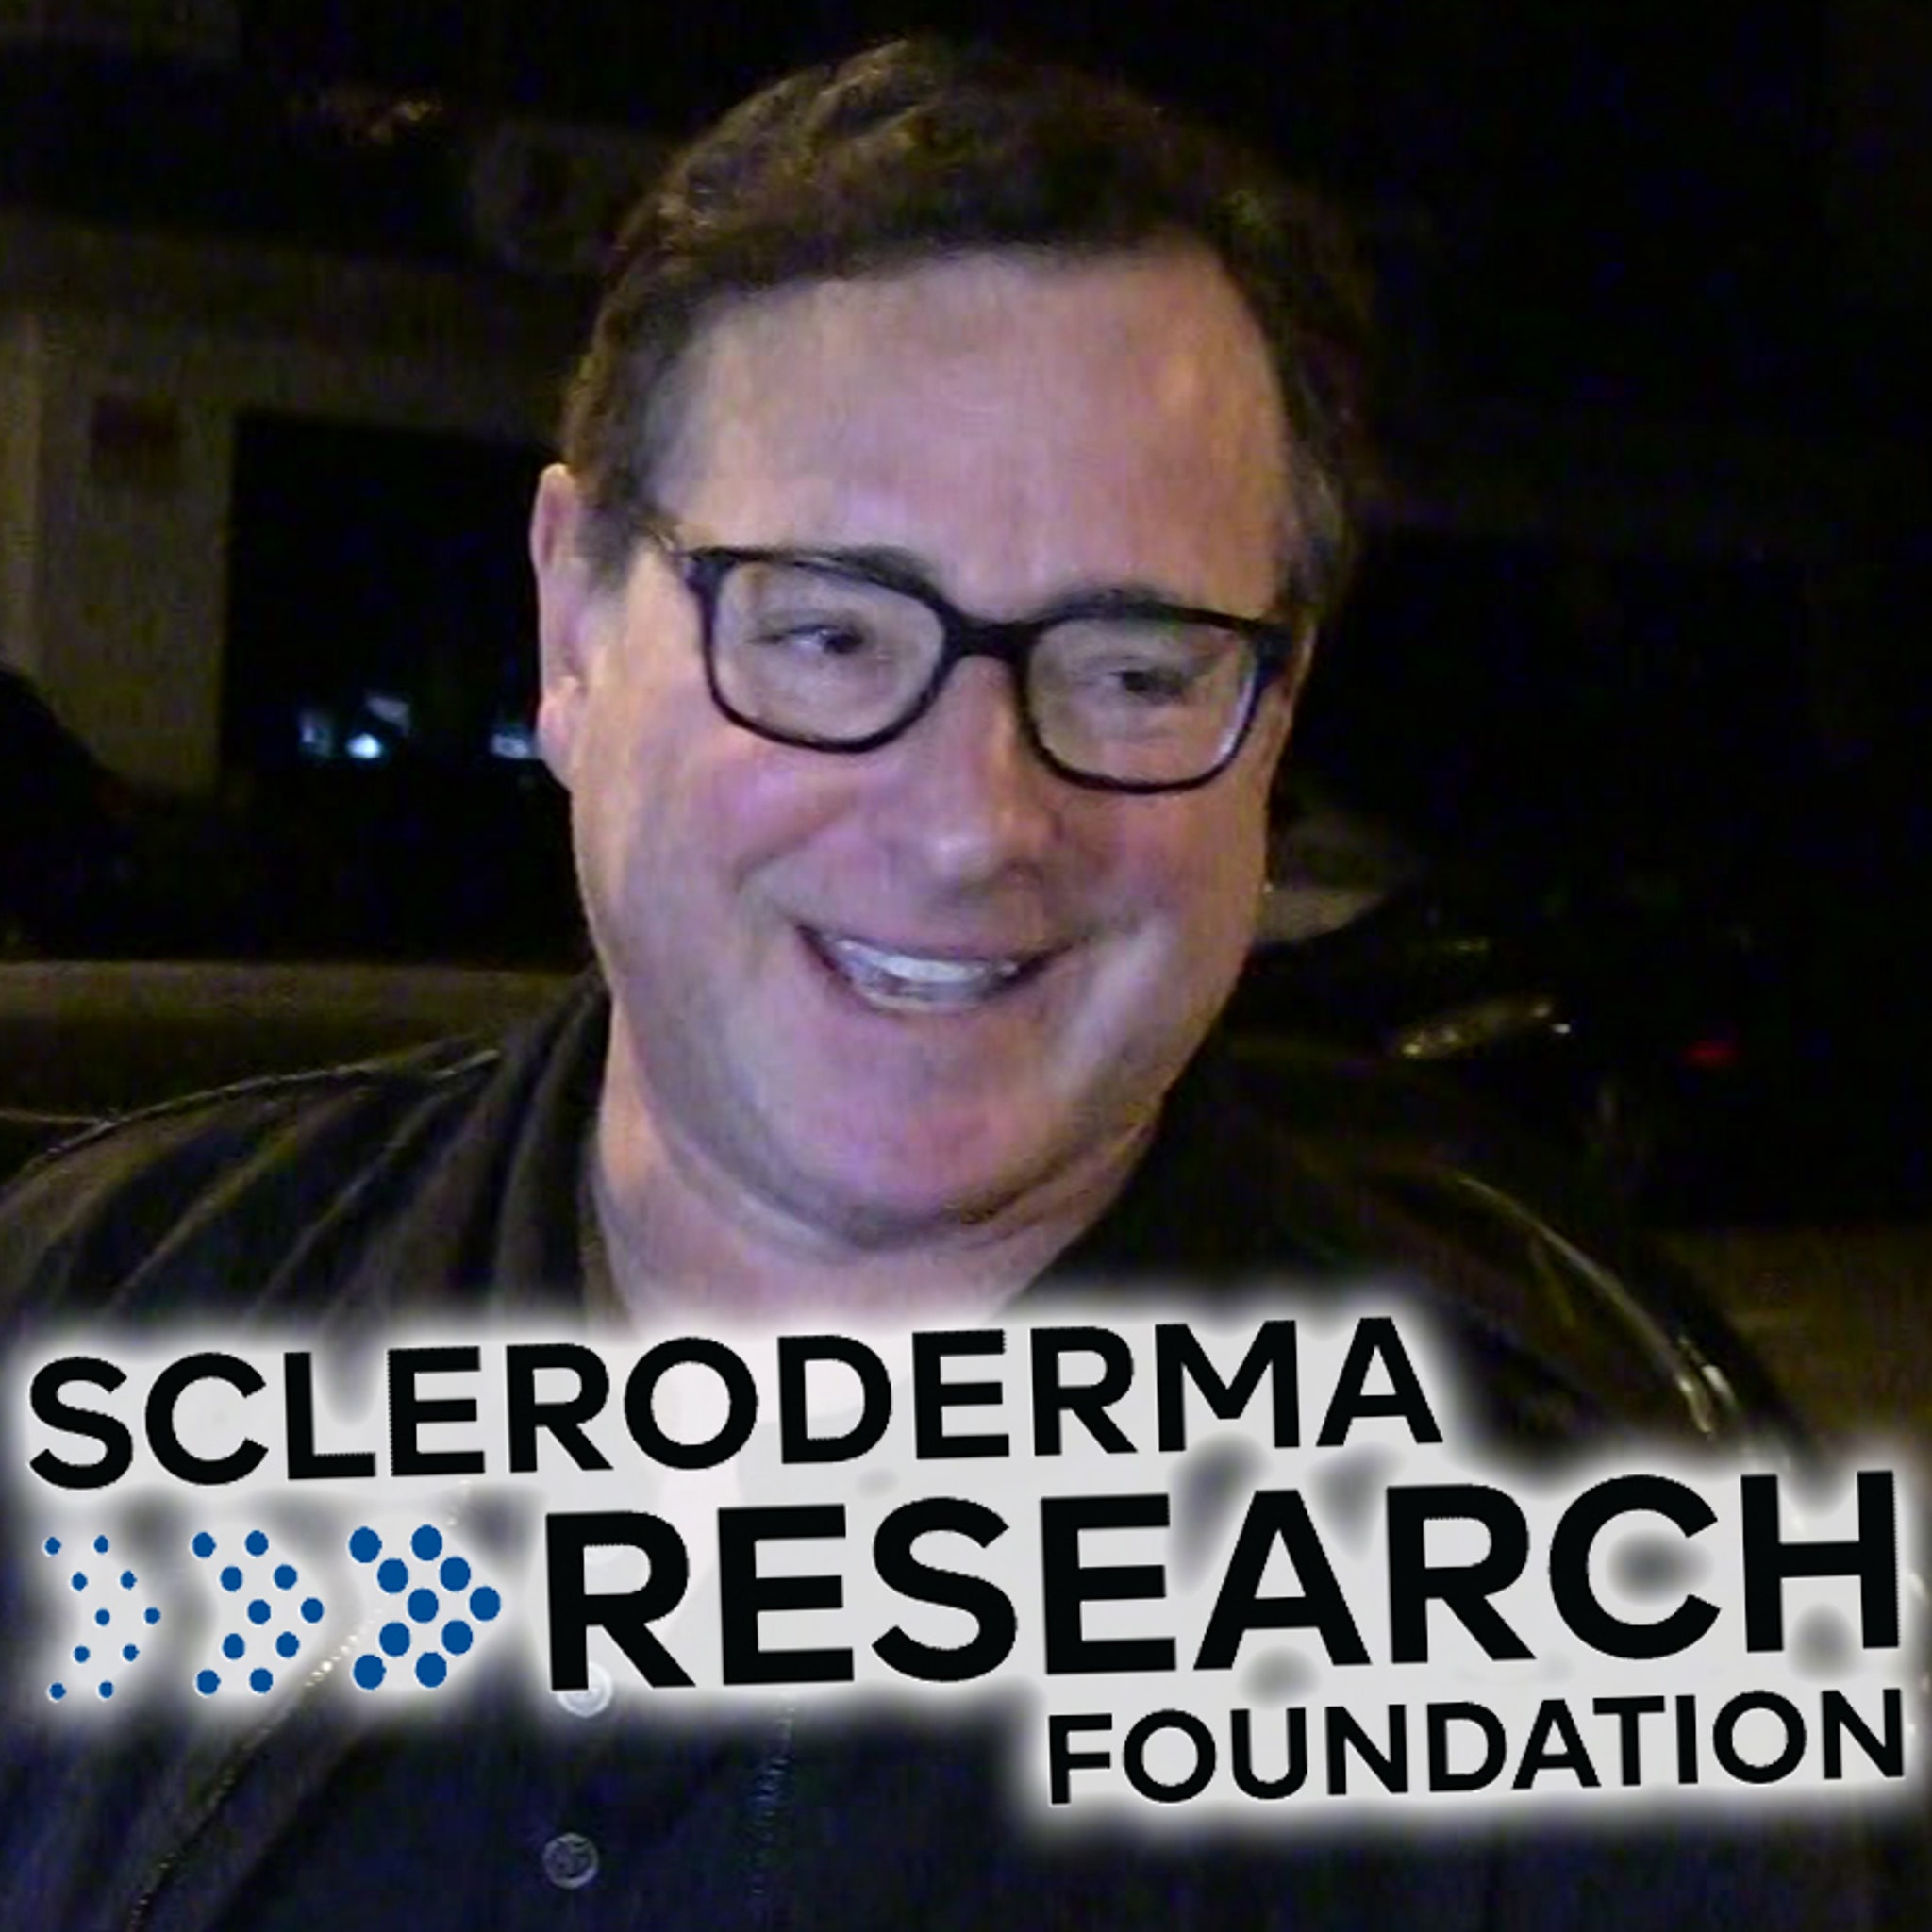 Bob Saget Scleroderma Fundraiser Tribute Show Raises $1.2 Million - TMZ (Picture 2)